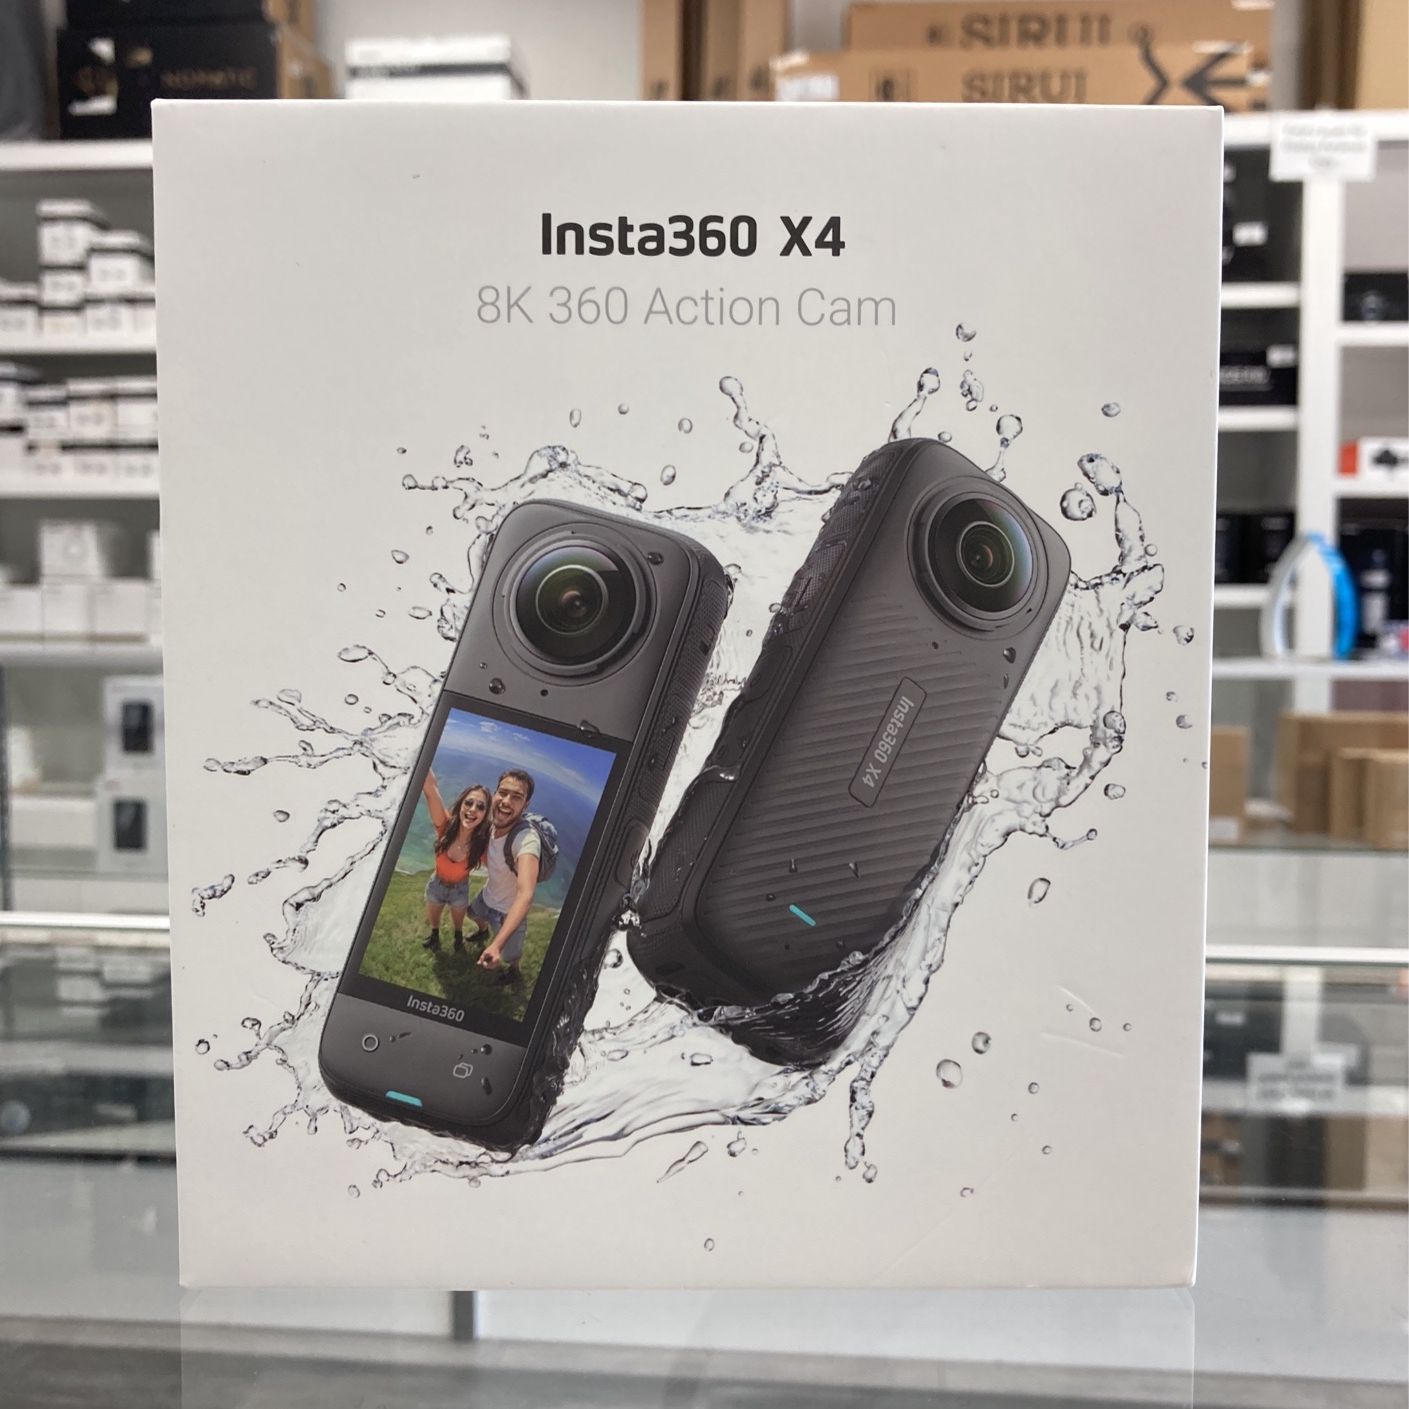 Insta360 X4 8k Action Camera